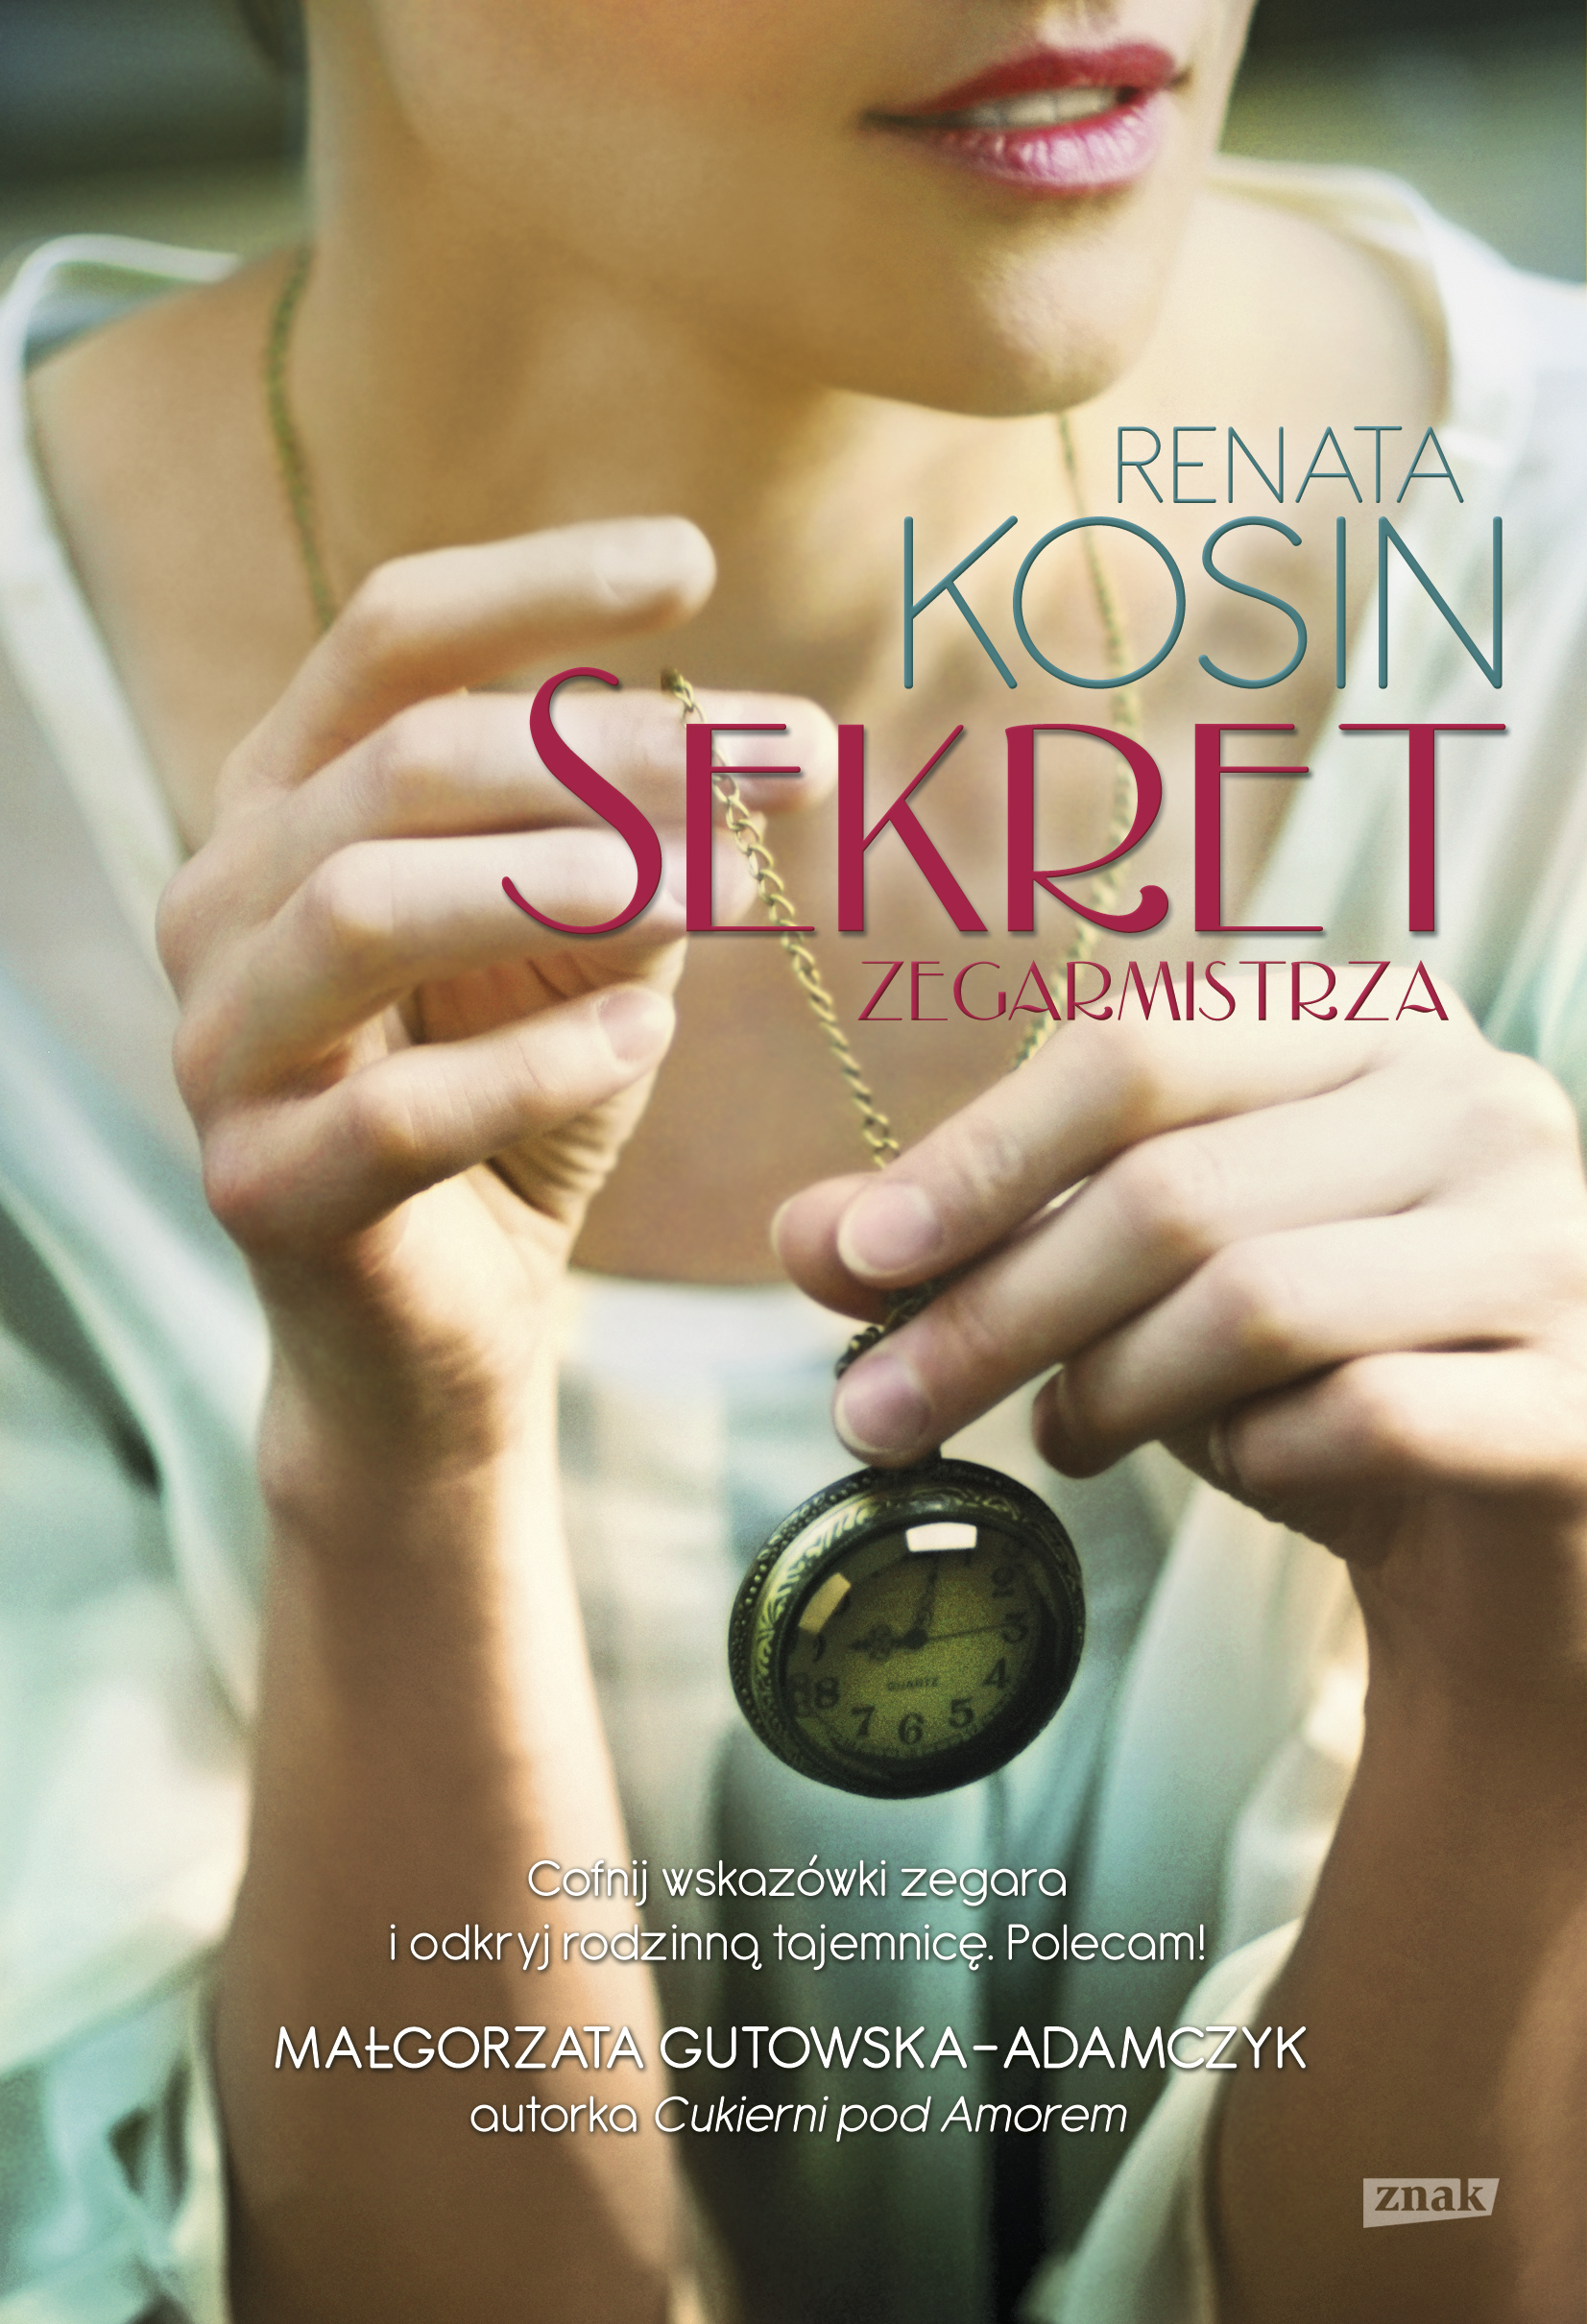 Sekret zegarmistrza Renata Kosin